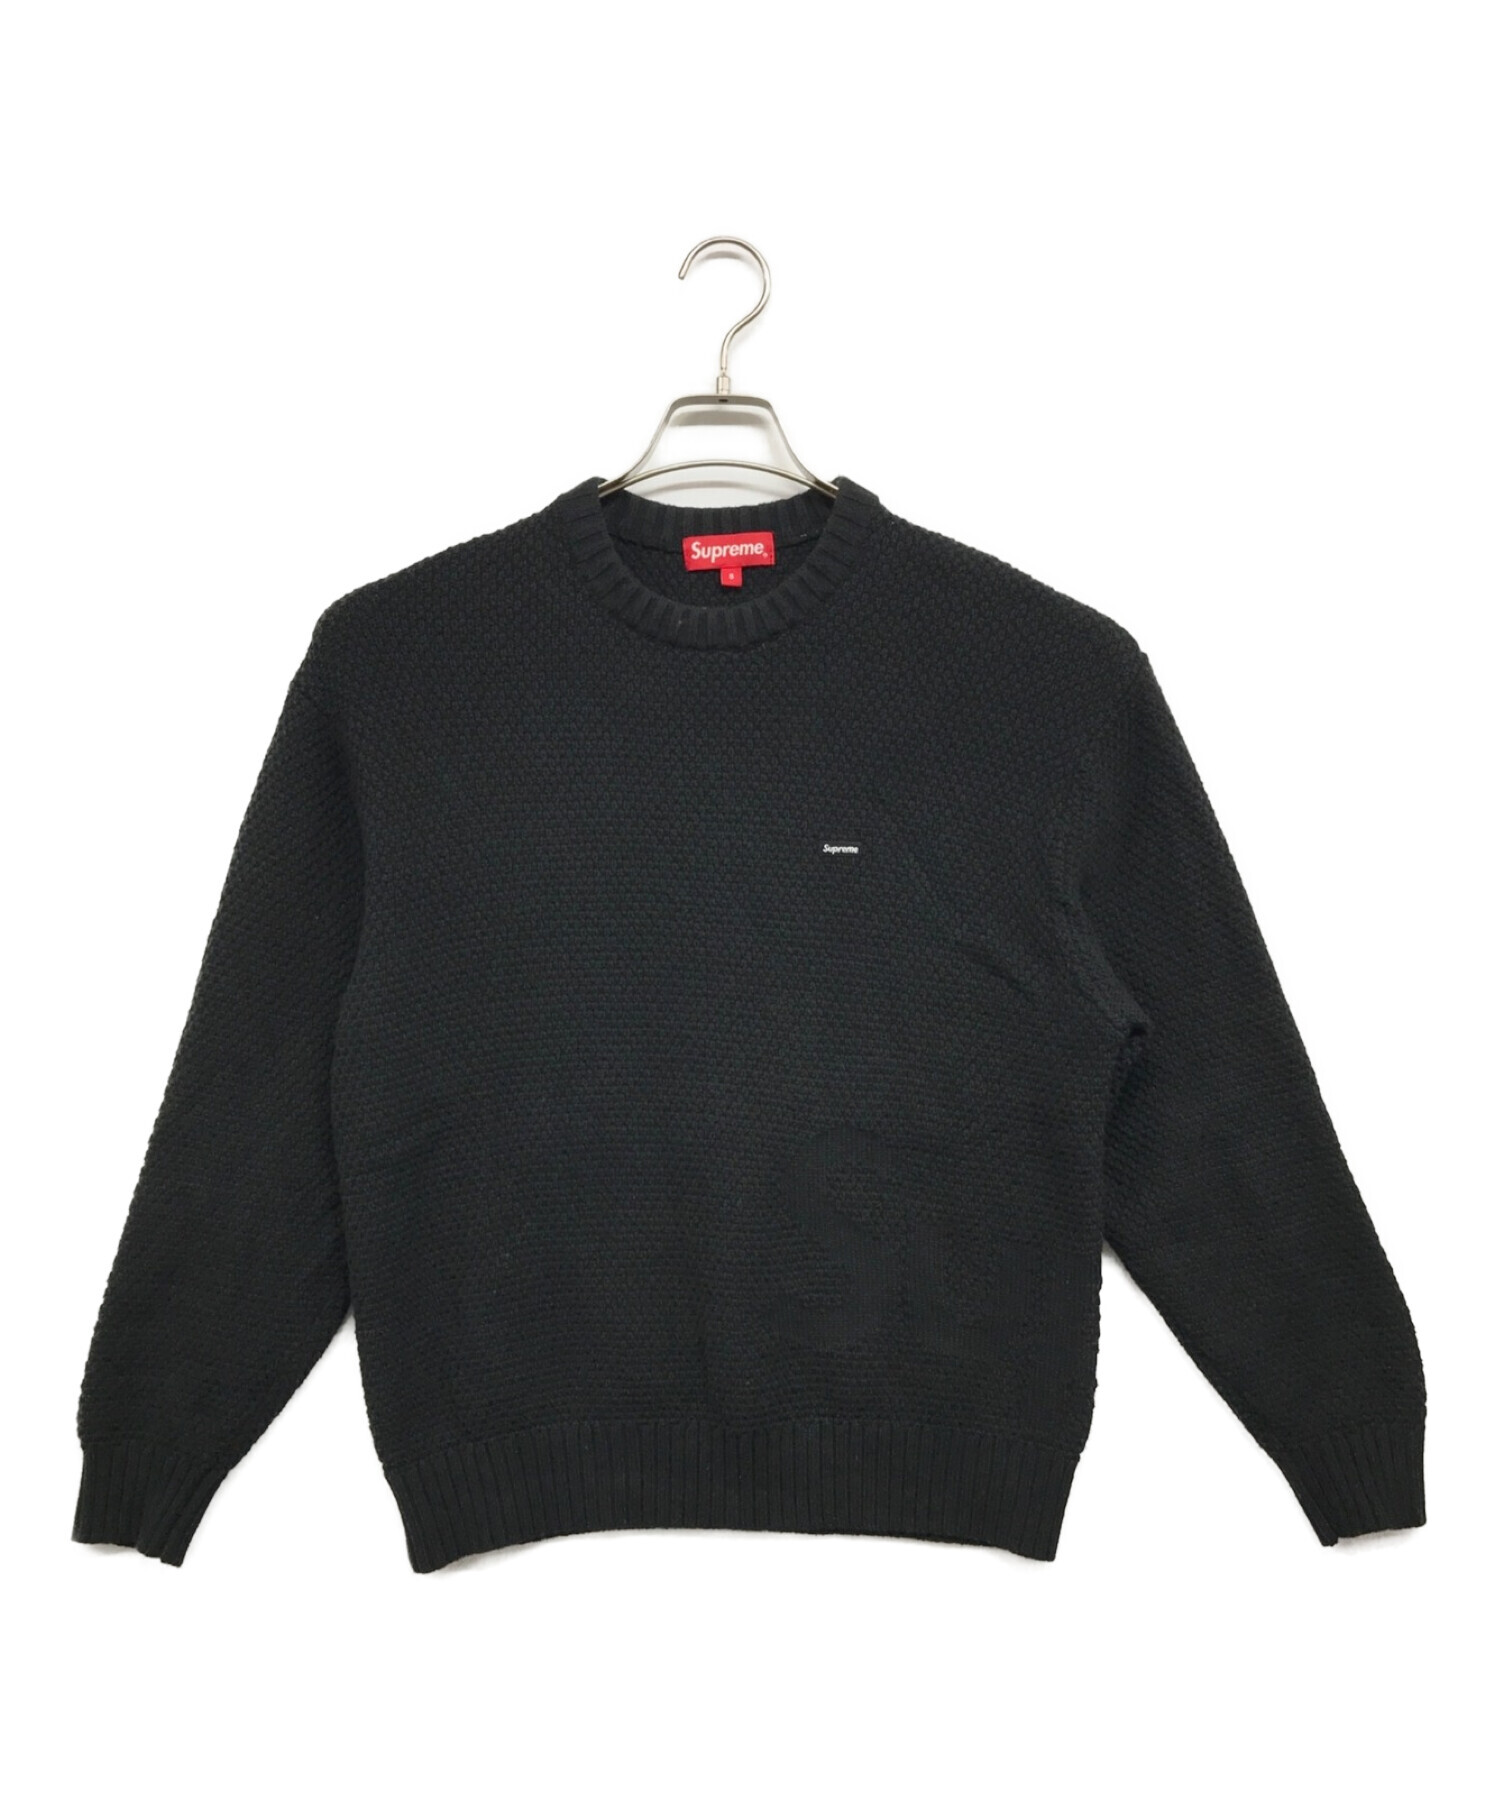 SUPREME (シュプリーム) Textured Small Box Sweater ブラック サイズ:S